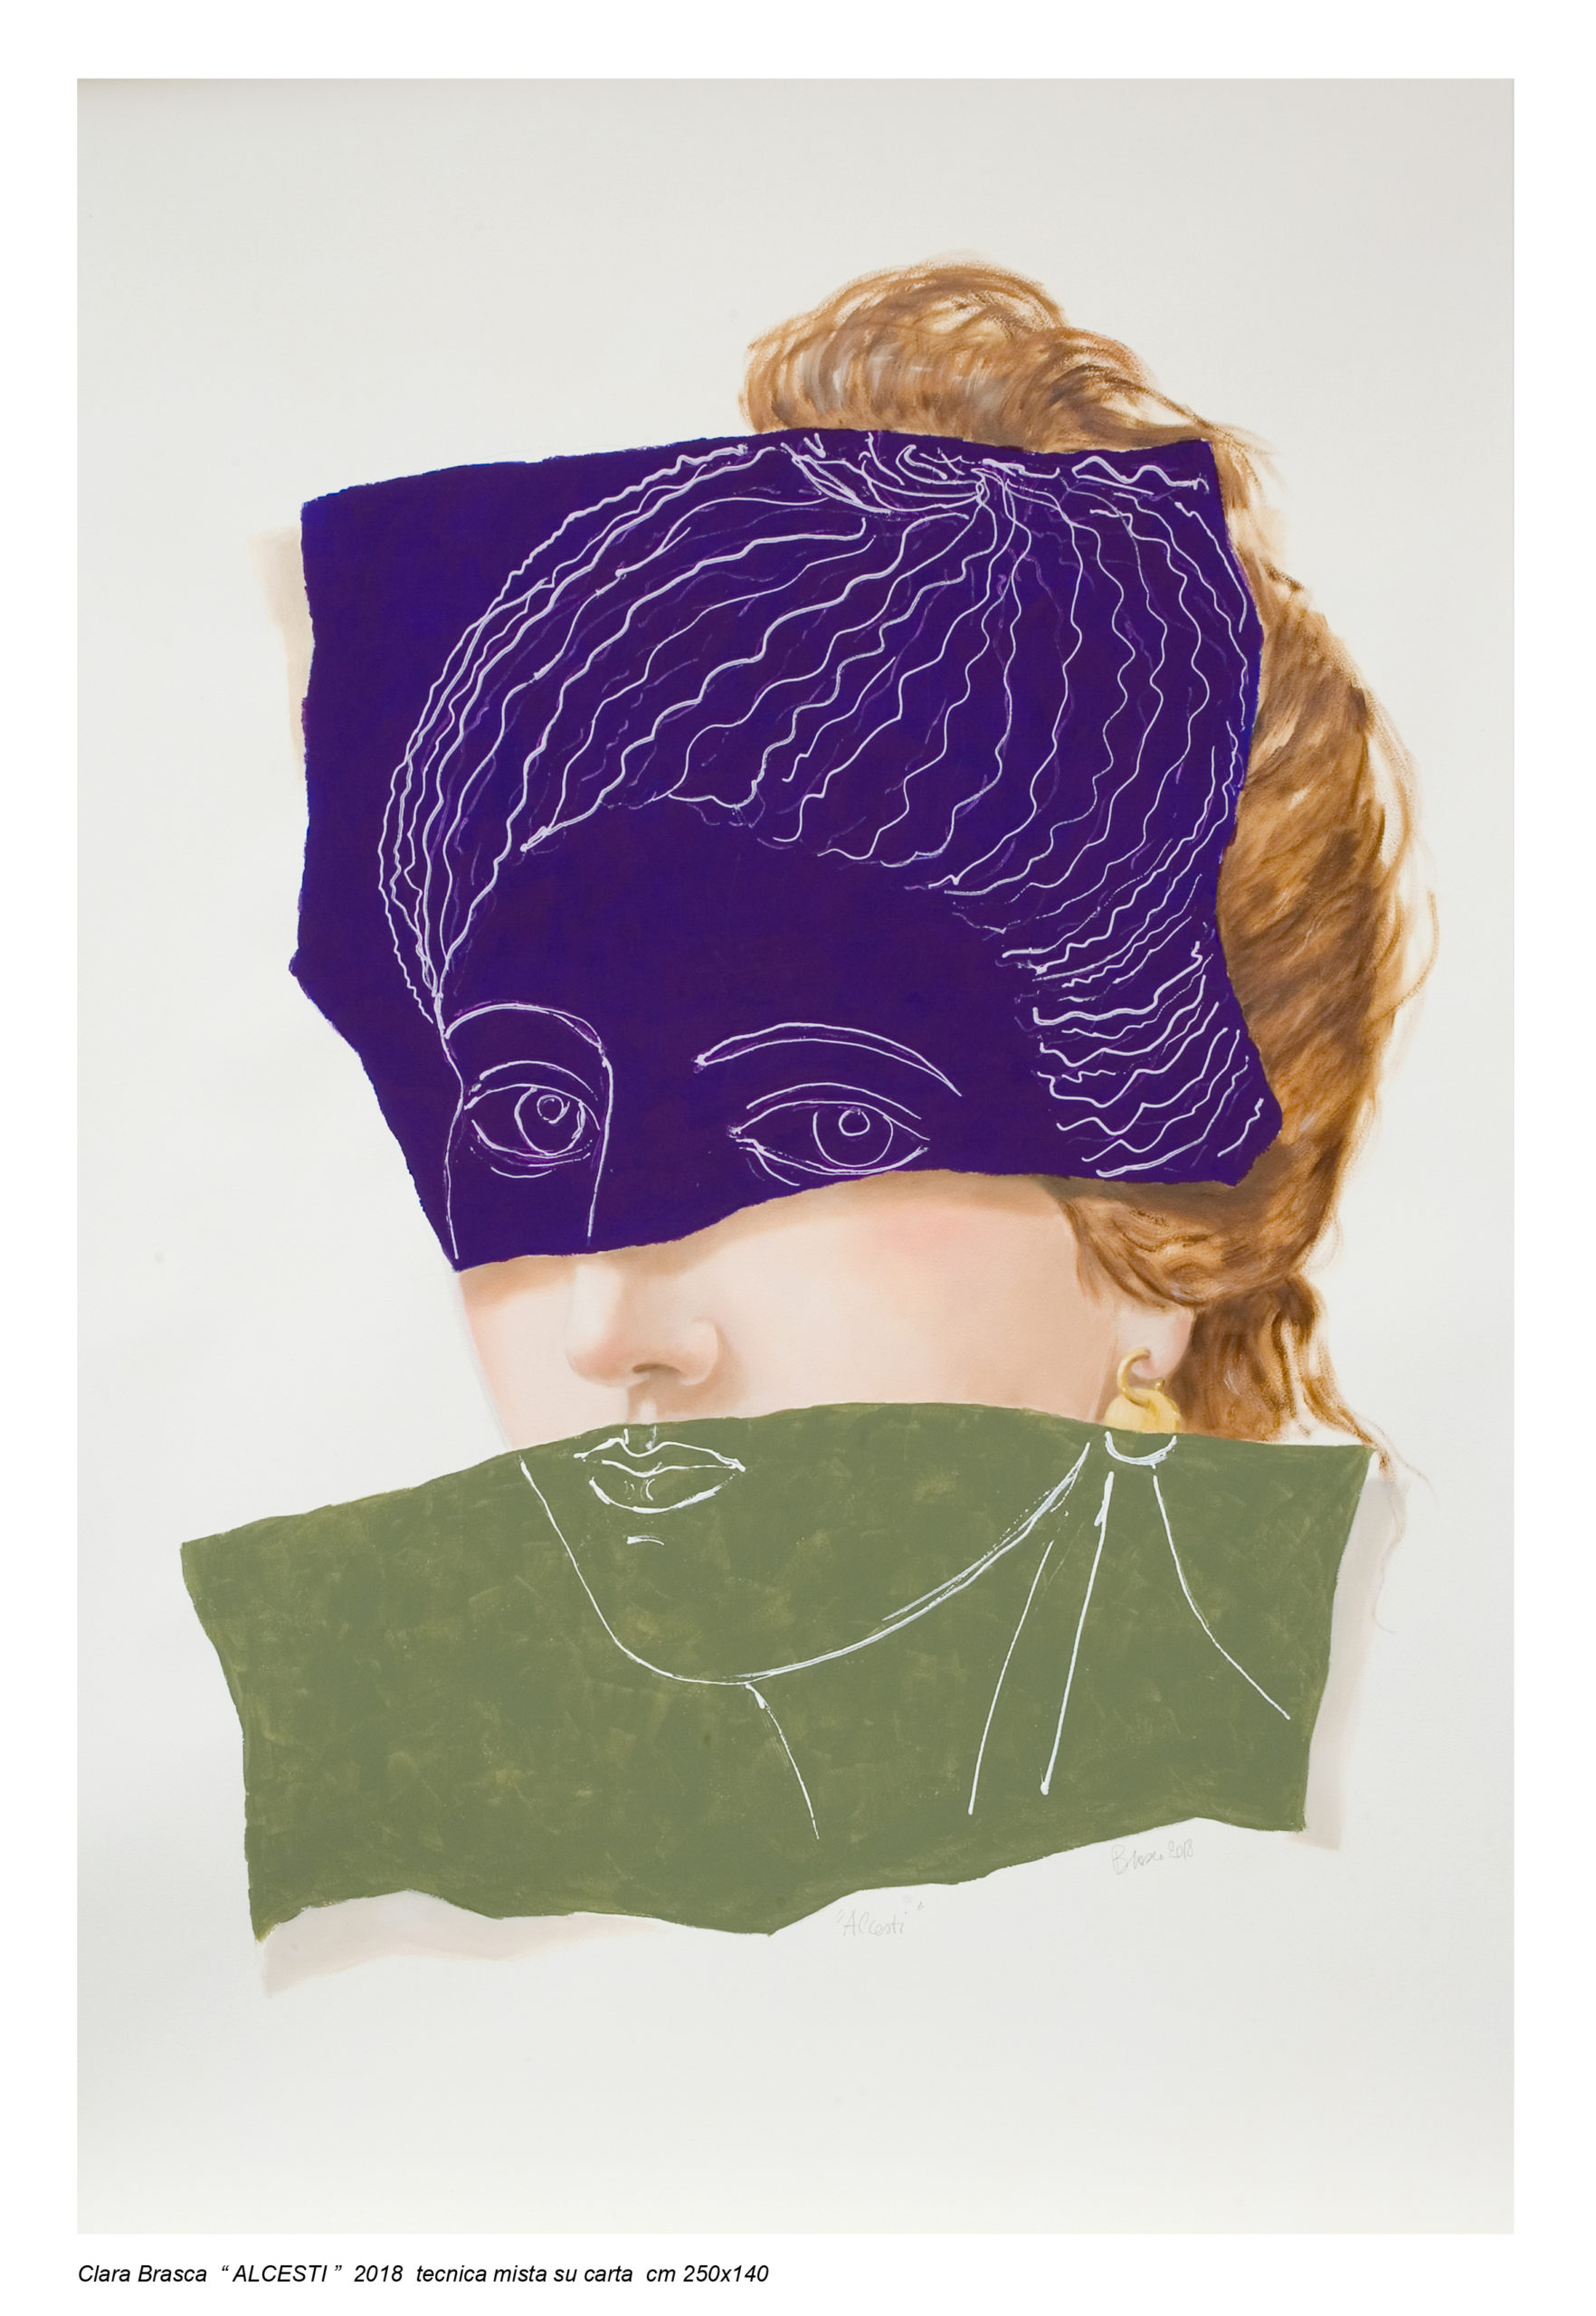 Clara Brasca, Allestii, 2018, tecnica mista su carta, 250 x 140 cm